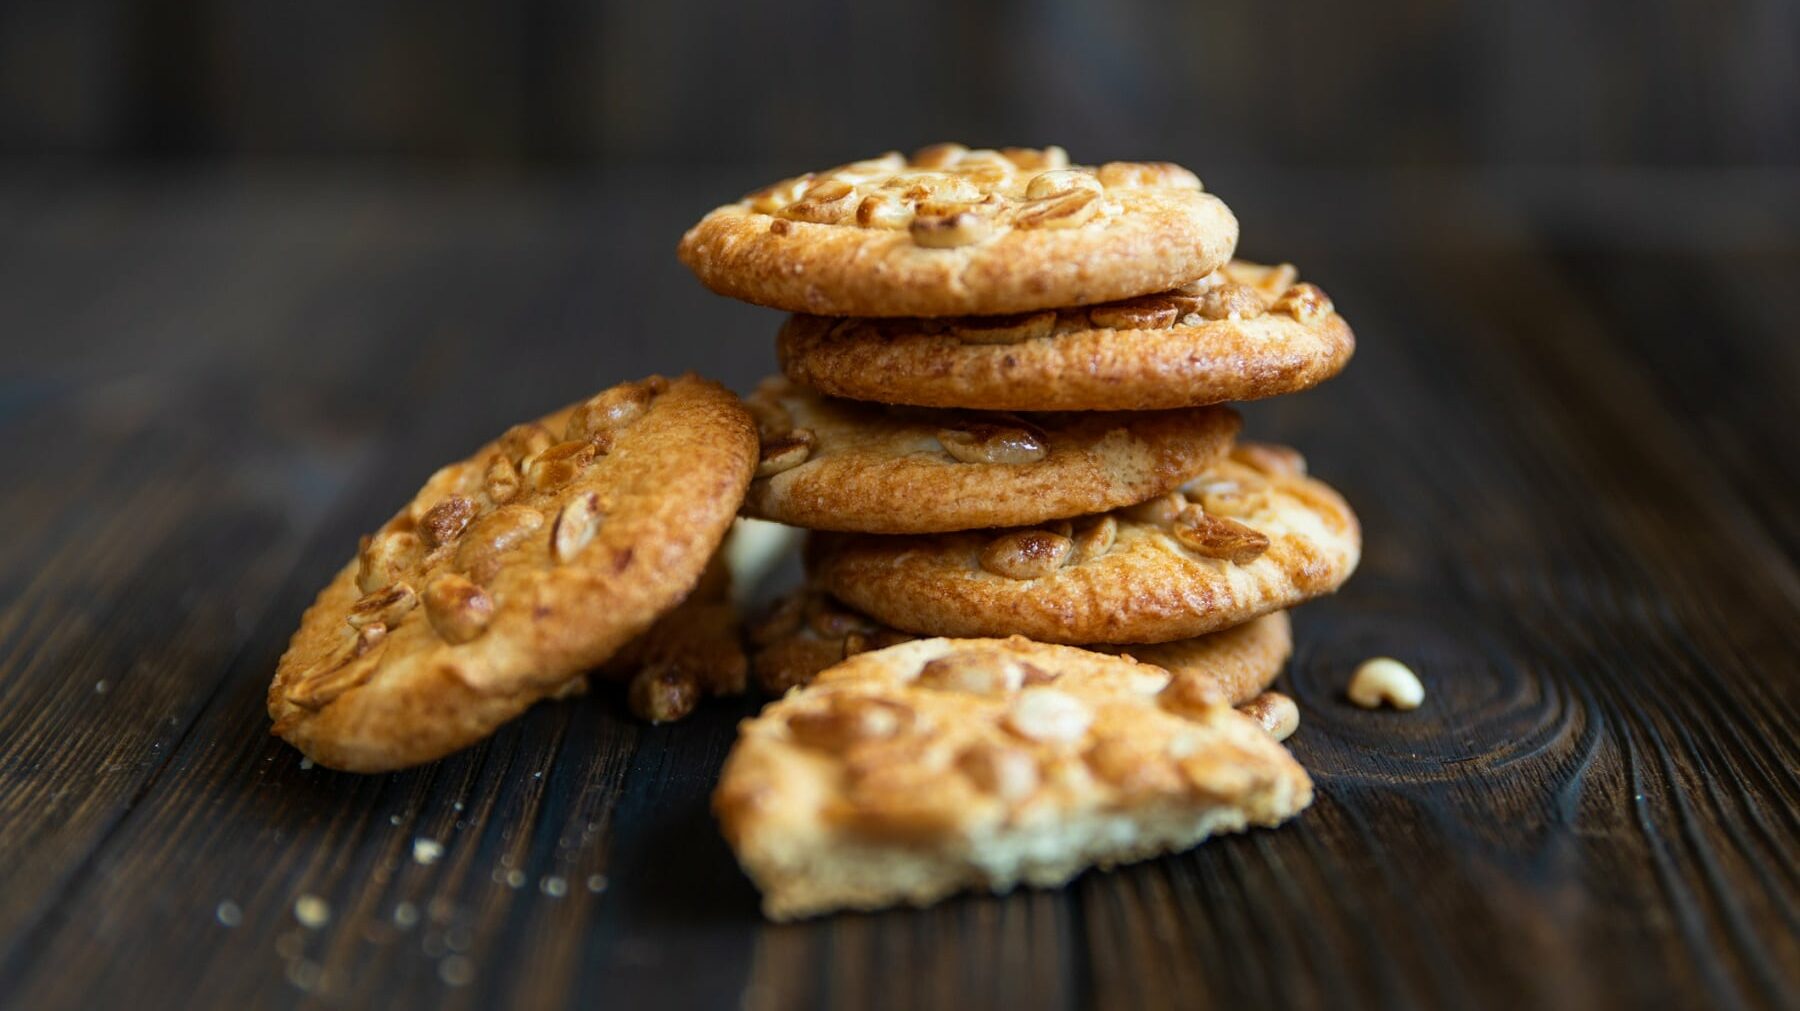 Erdnuss Cookies liegen gestapelt auf einem braunen Holztisch. Fünf Kekse bilden einen Turm, ein sechster Keks ist seitlich gegen den Turm gelehnt. Im Vordergrund liegt ein halbierter Keks und einige Krümel.